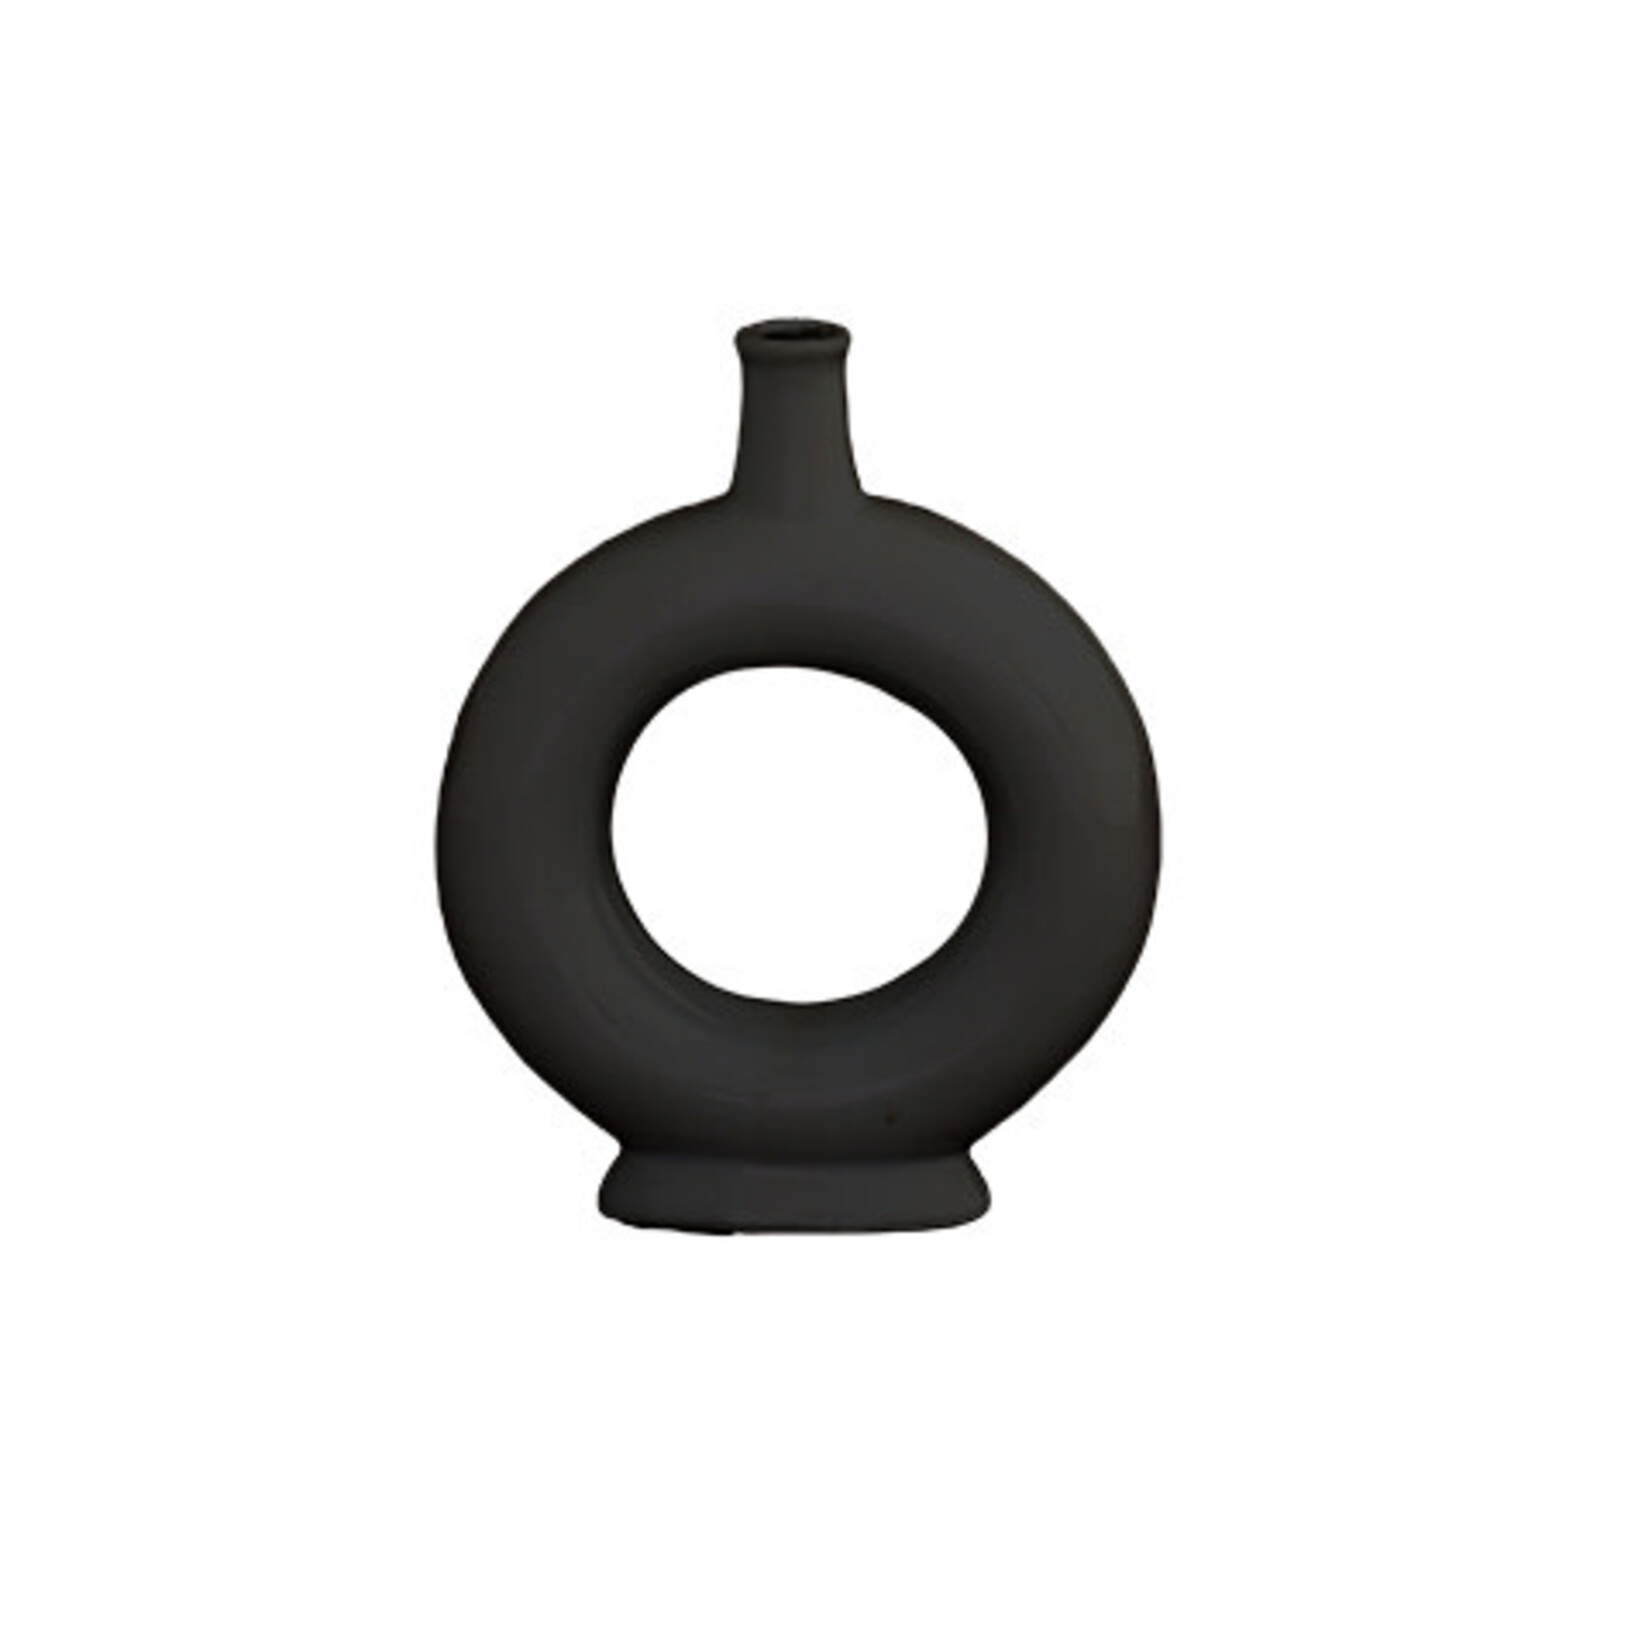 8”H X 6.5” MATTE BLACK CERMIC RING PEDESTAL BUDVASE